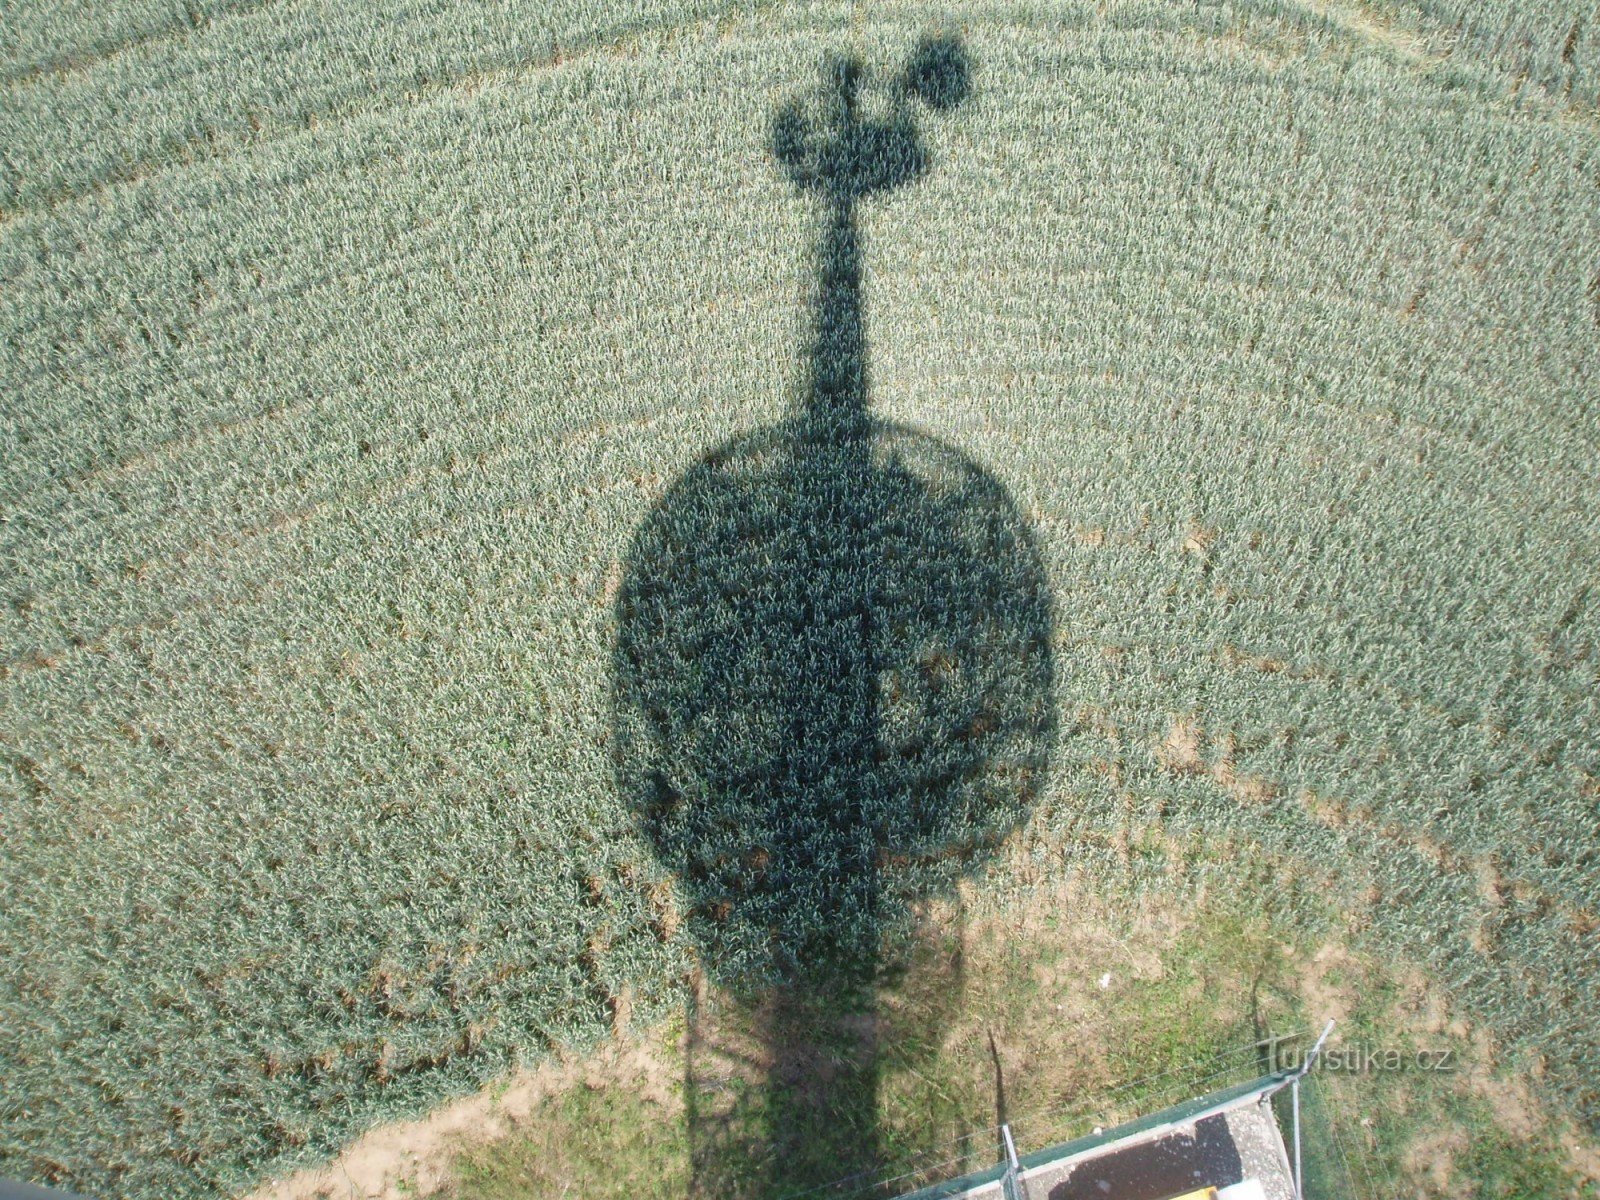 从瞭望塔可以看到投影在野外的同一座瞭望塔